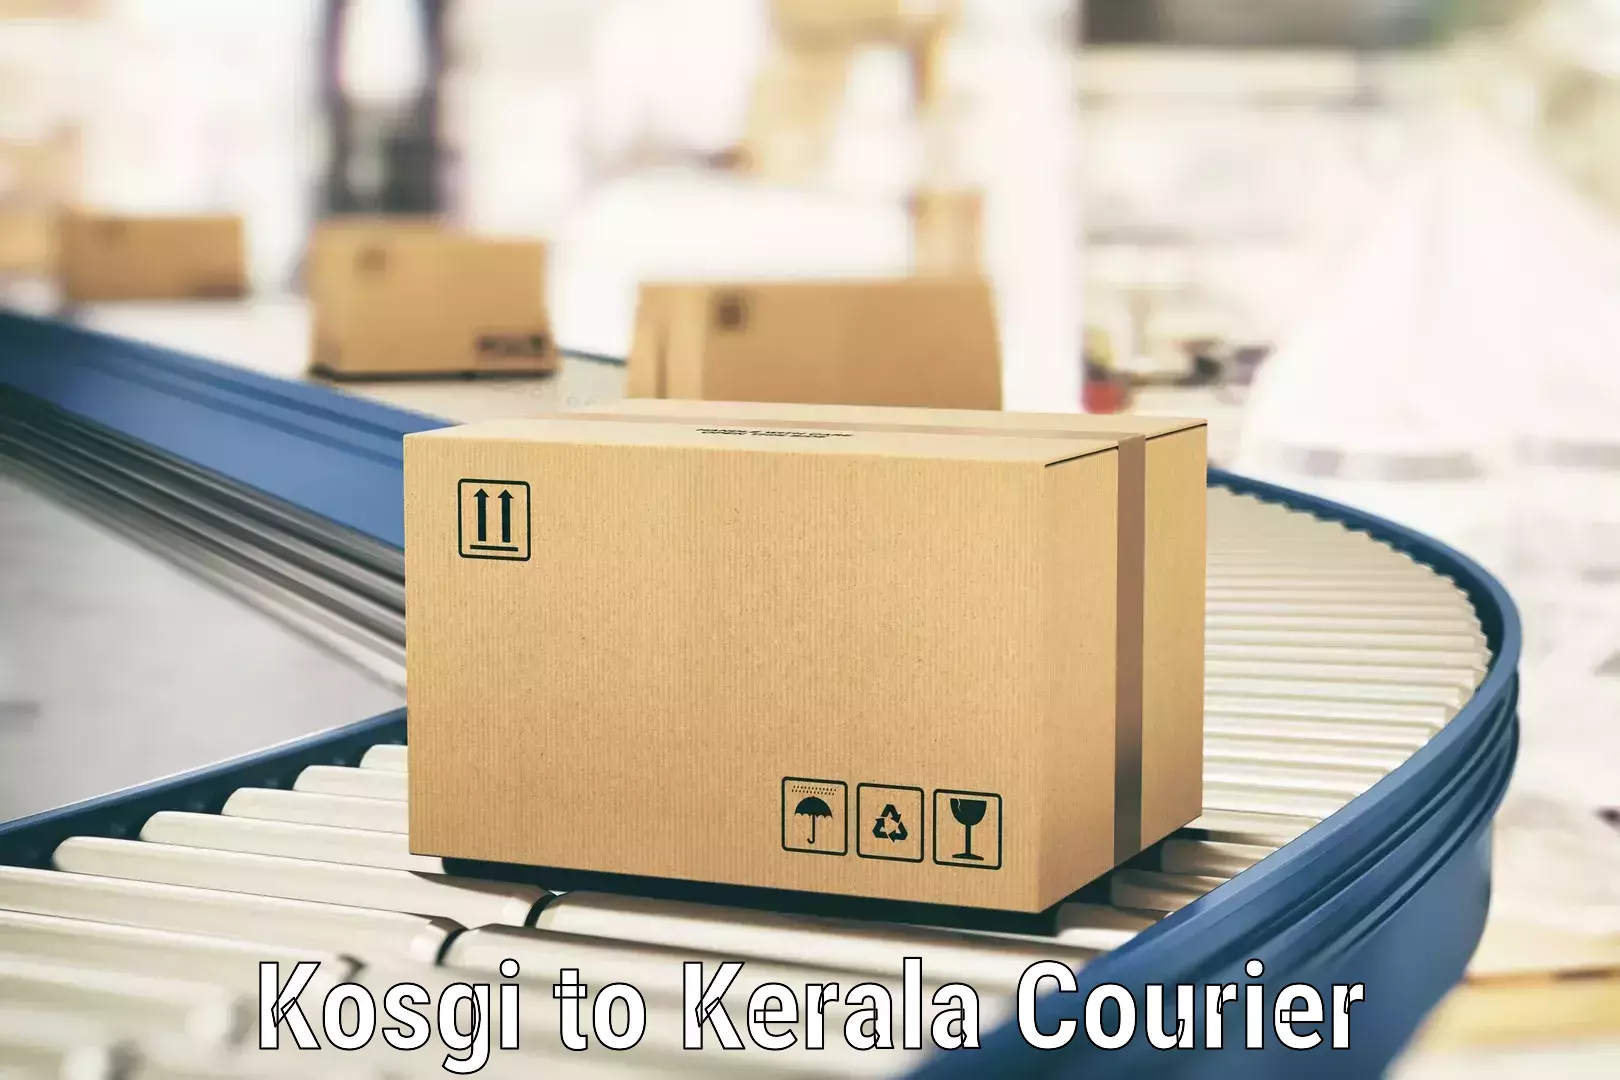 Customer-oriented courier services Kosgi to Kallikkad